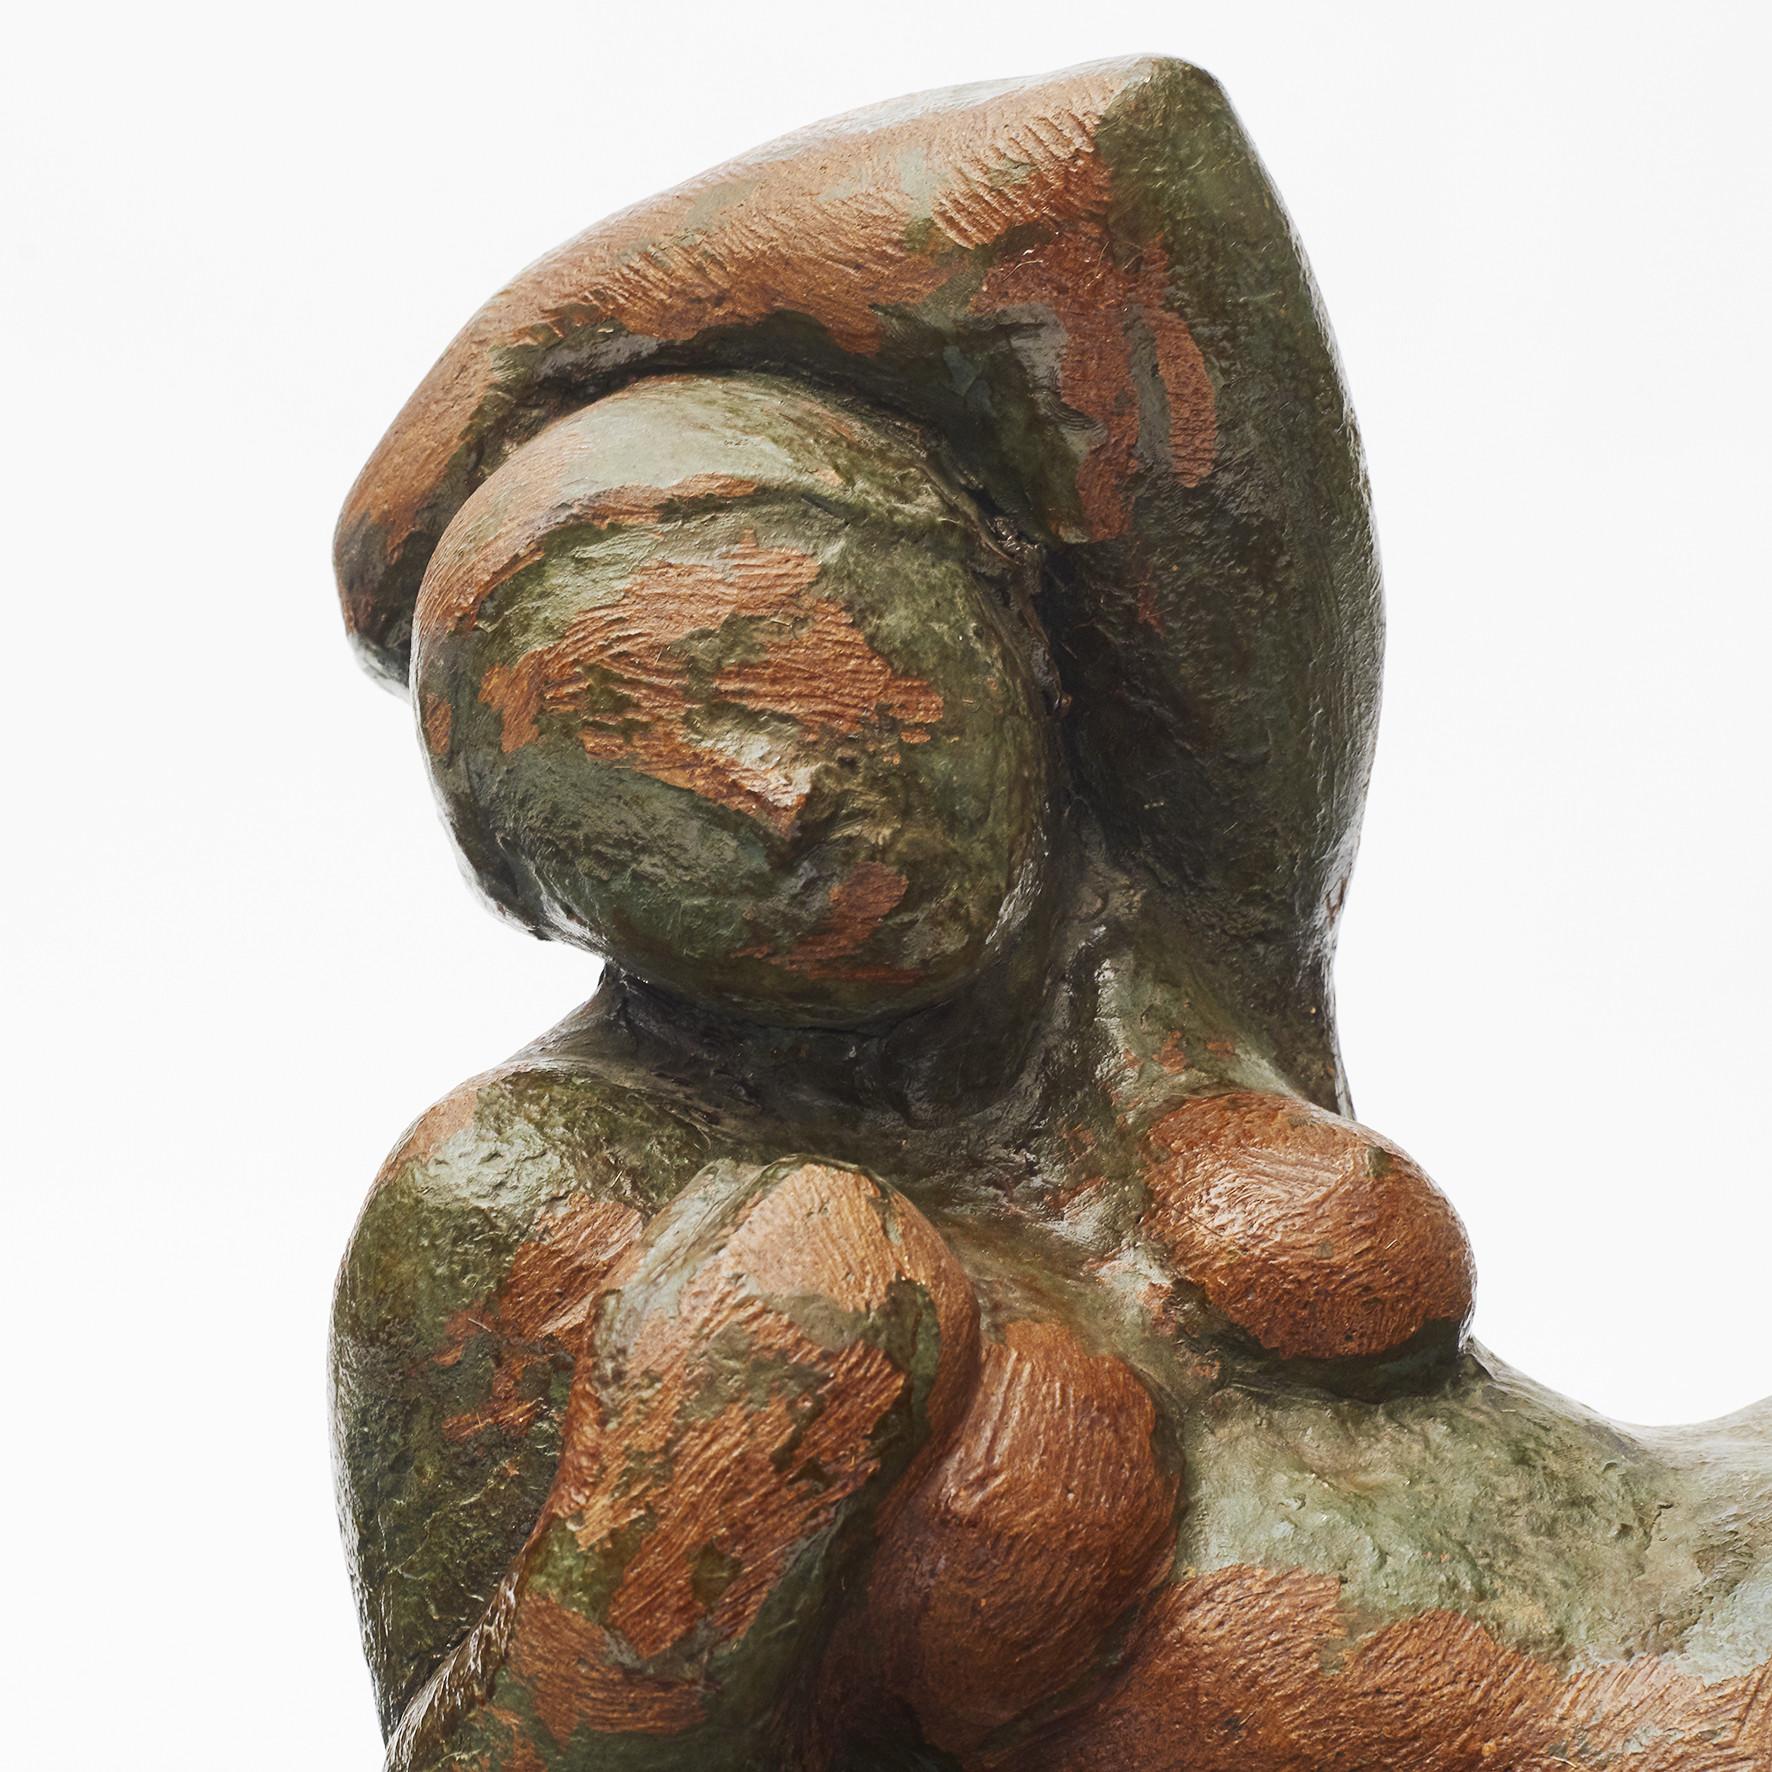 Gebrannte Tonskulptur einer nackten, liegenden Frau.
Im Stil von Gerhard Henning (oder einem unsignierten Gerhard Henning).
Eine sehr charismatische und dekorative Skulptur.
 